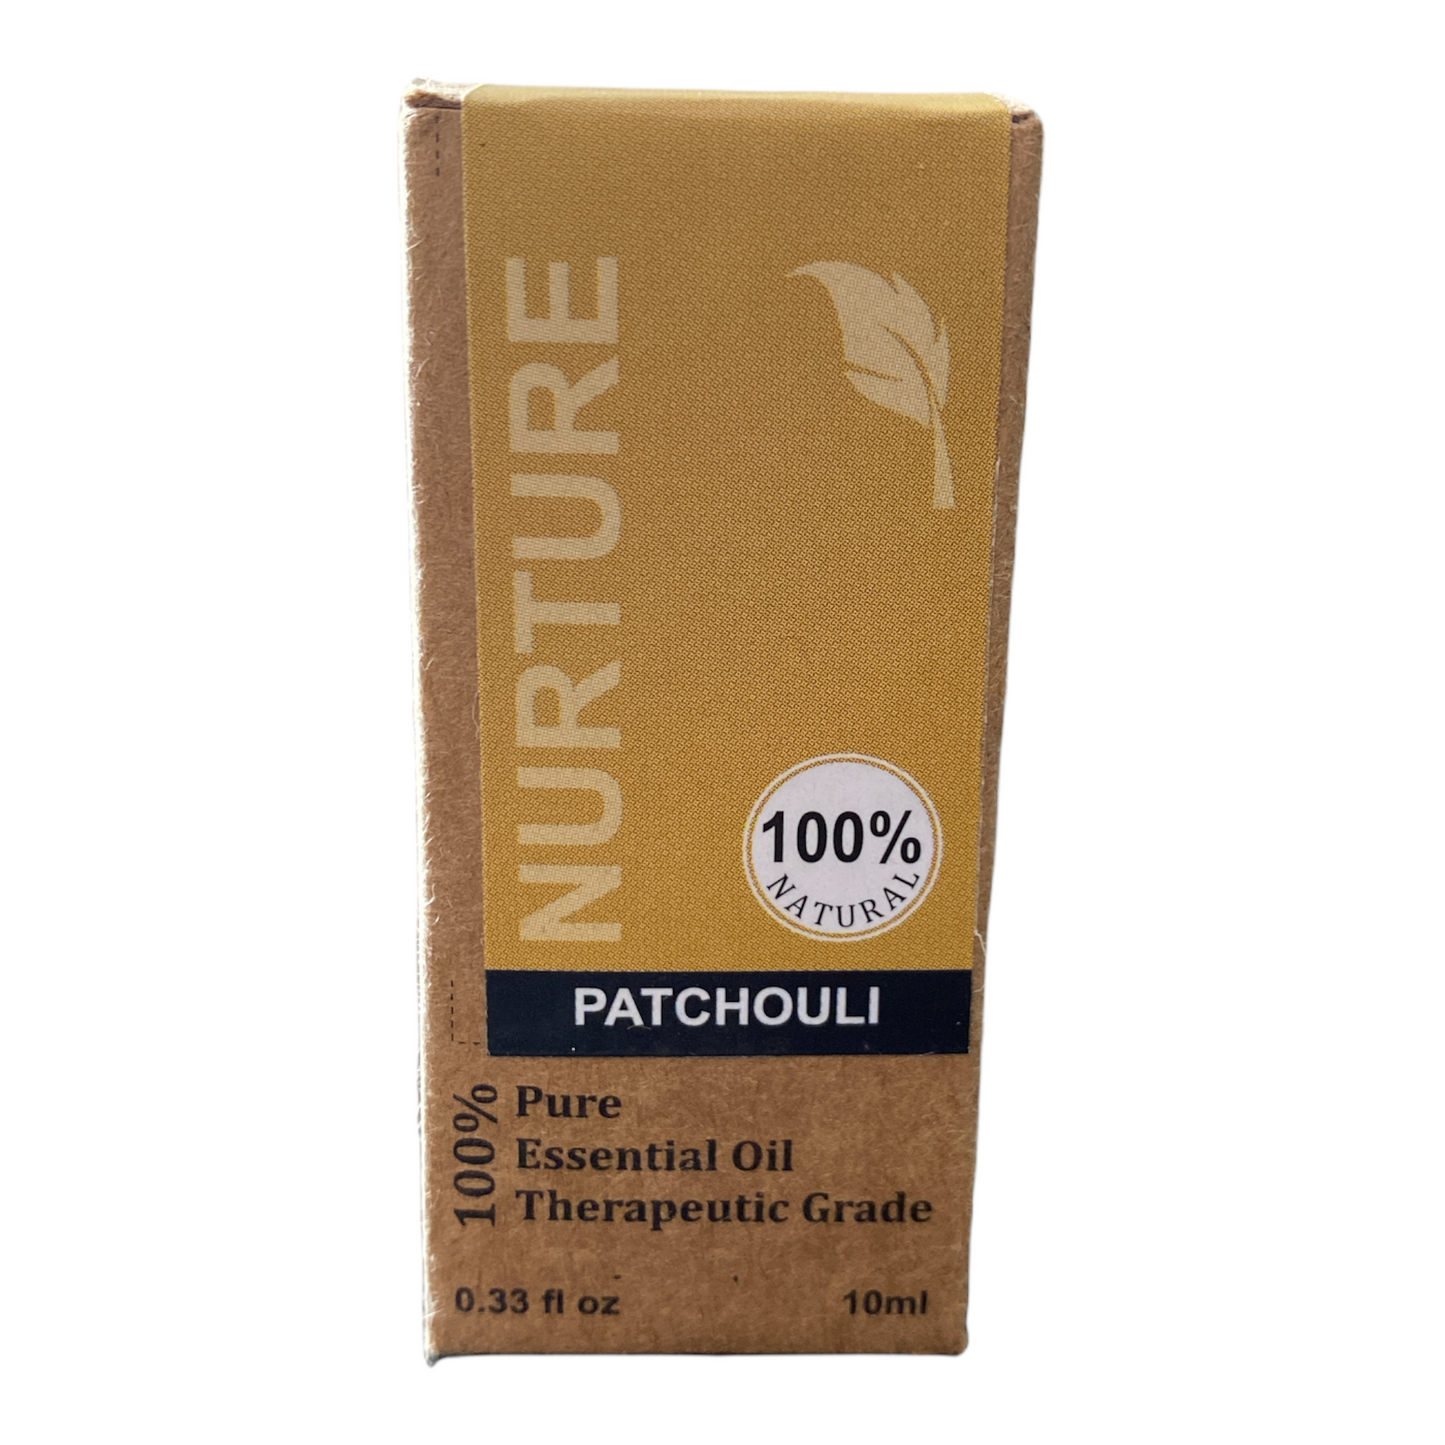 Nurture - Patchouli Essential Oil